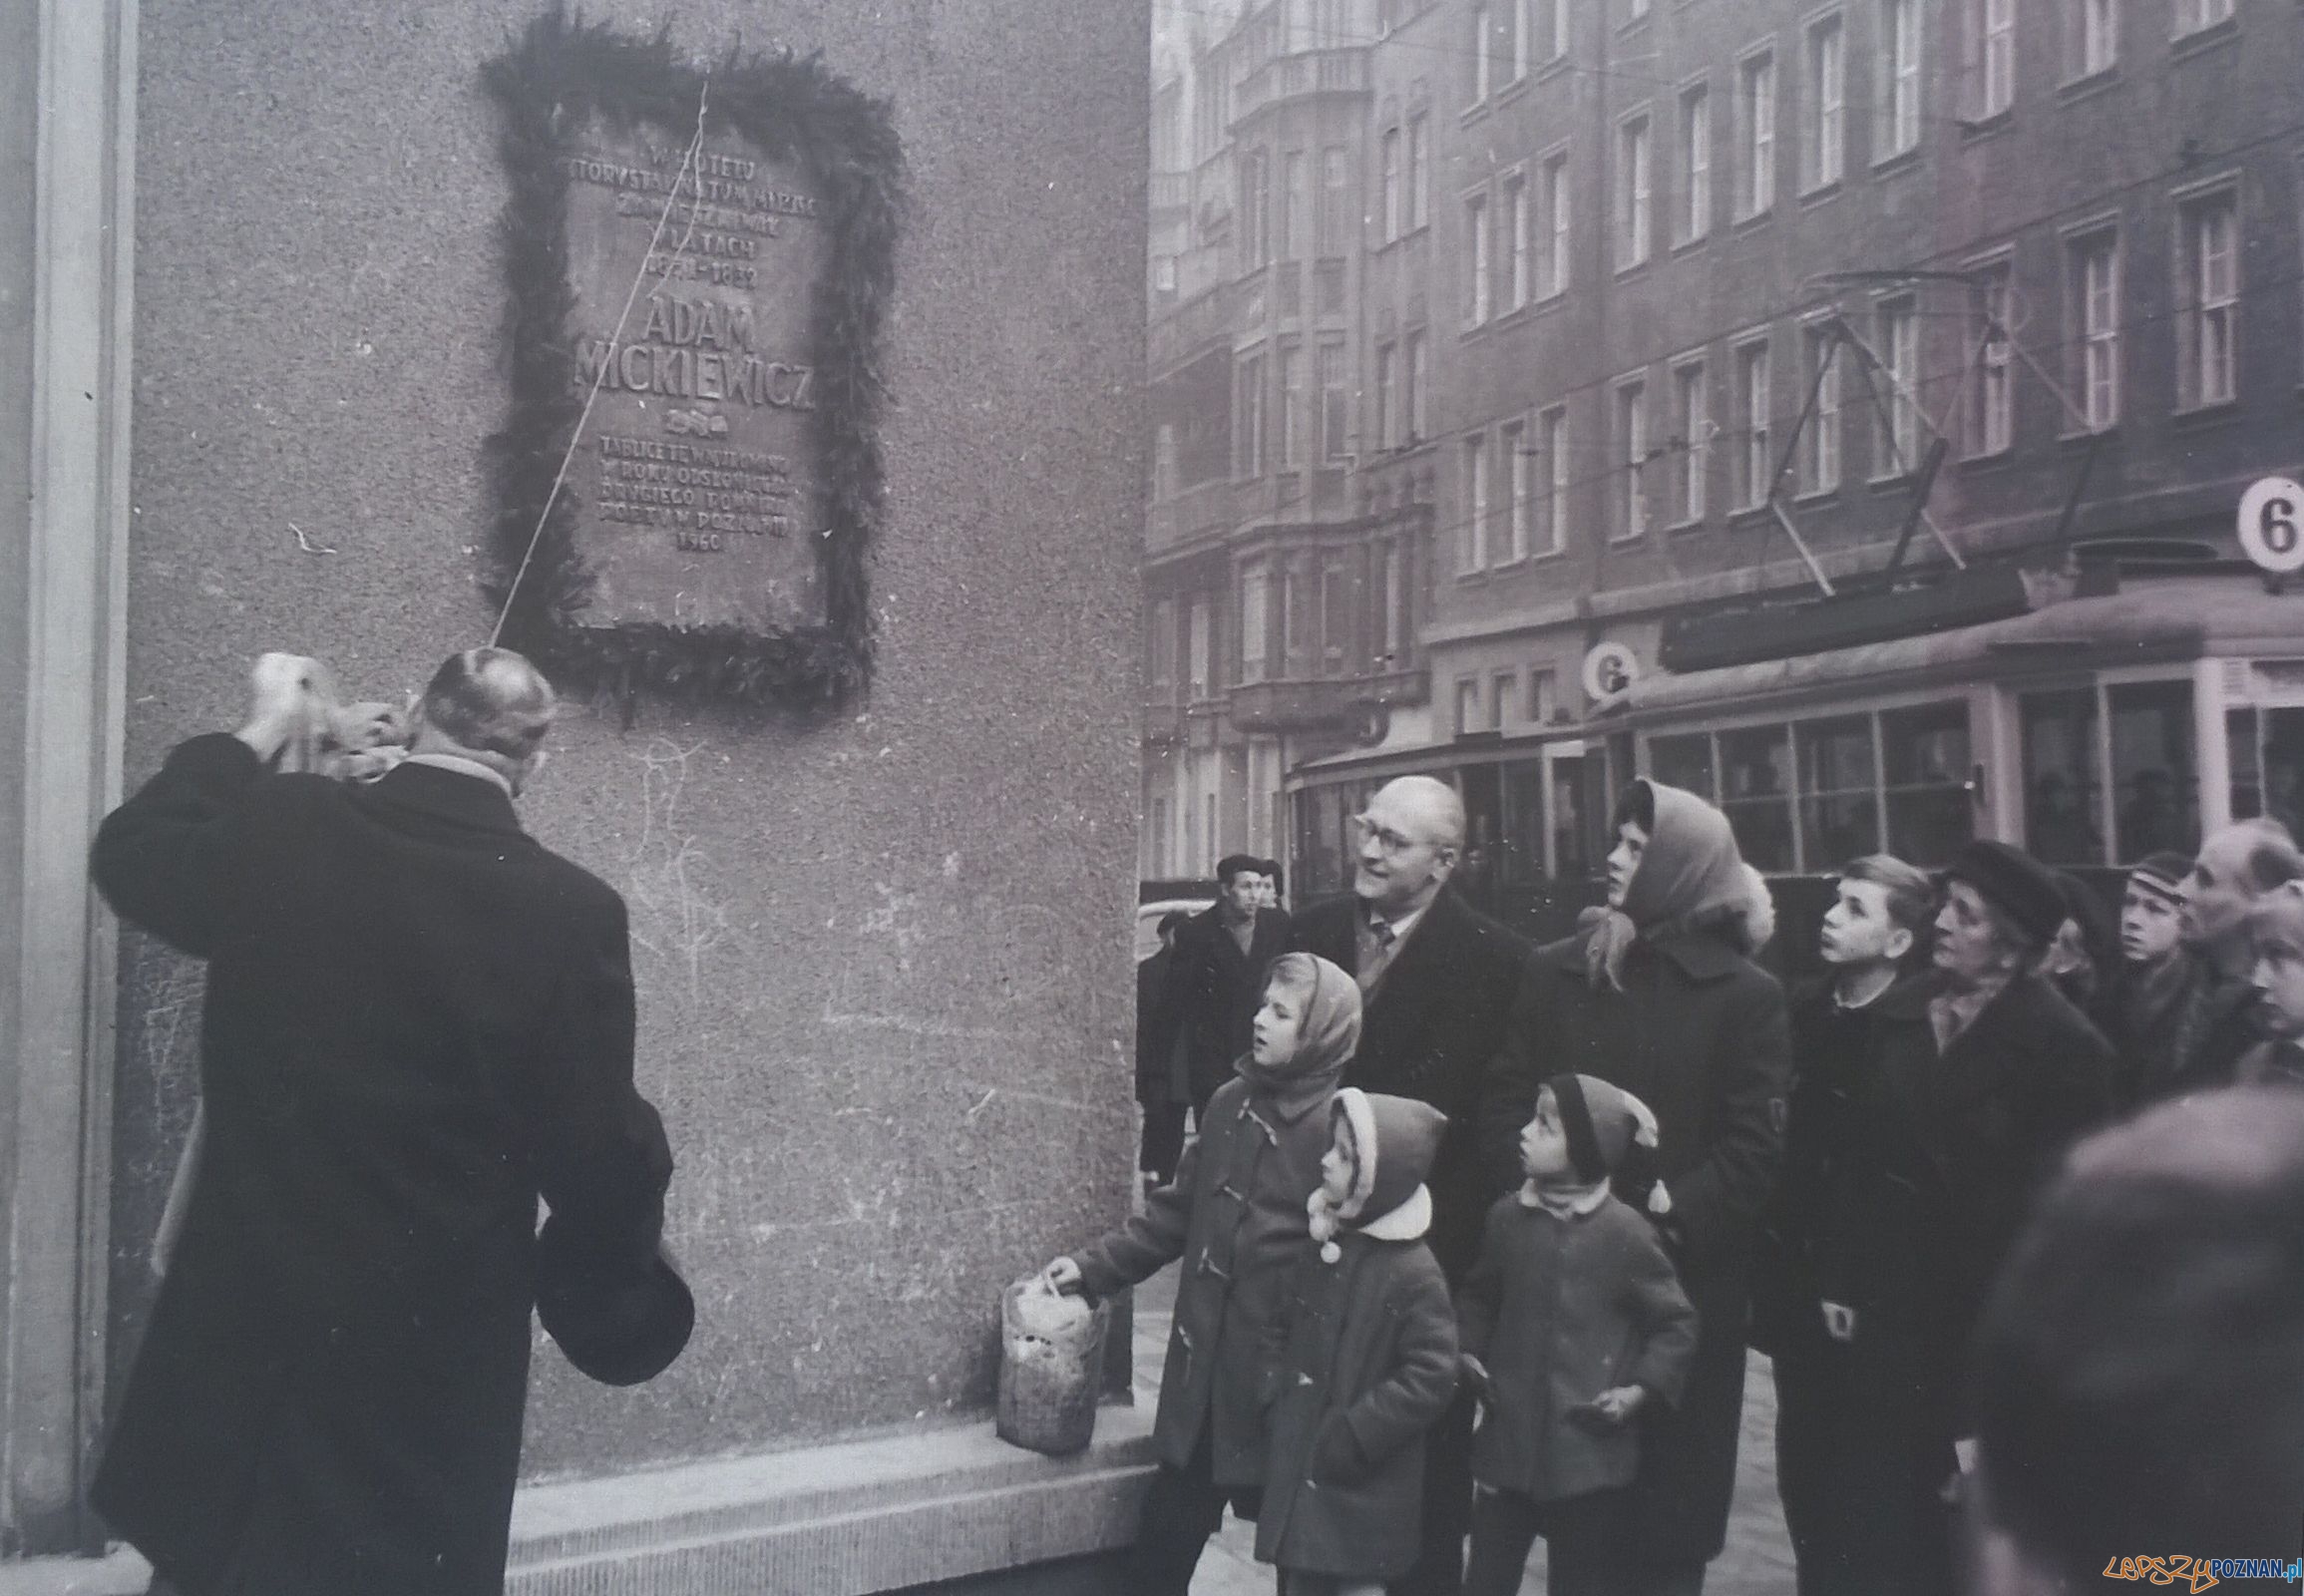 Odsloniecie tablicy upamiętniajacej pobyt Mickiewicza w Poznaniu, na budnku przy Alejach Marcinkowskiego 24.12.1960